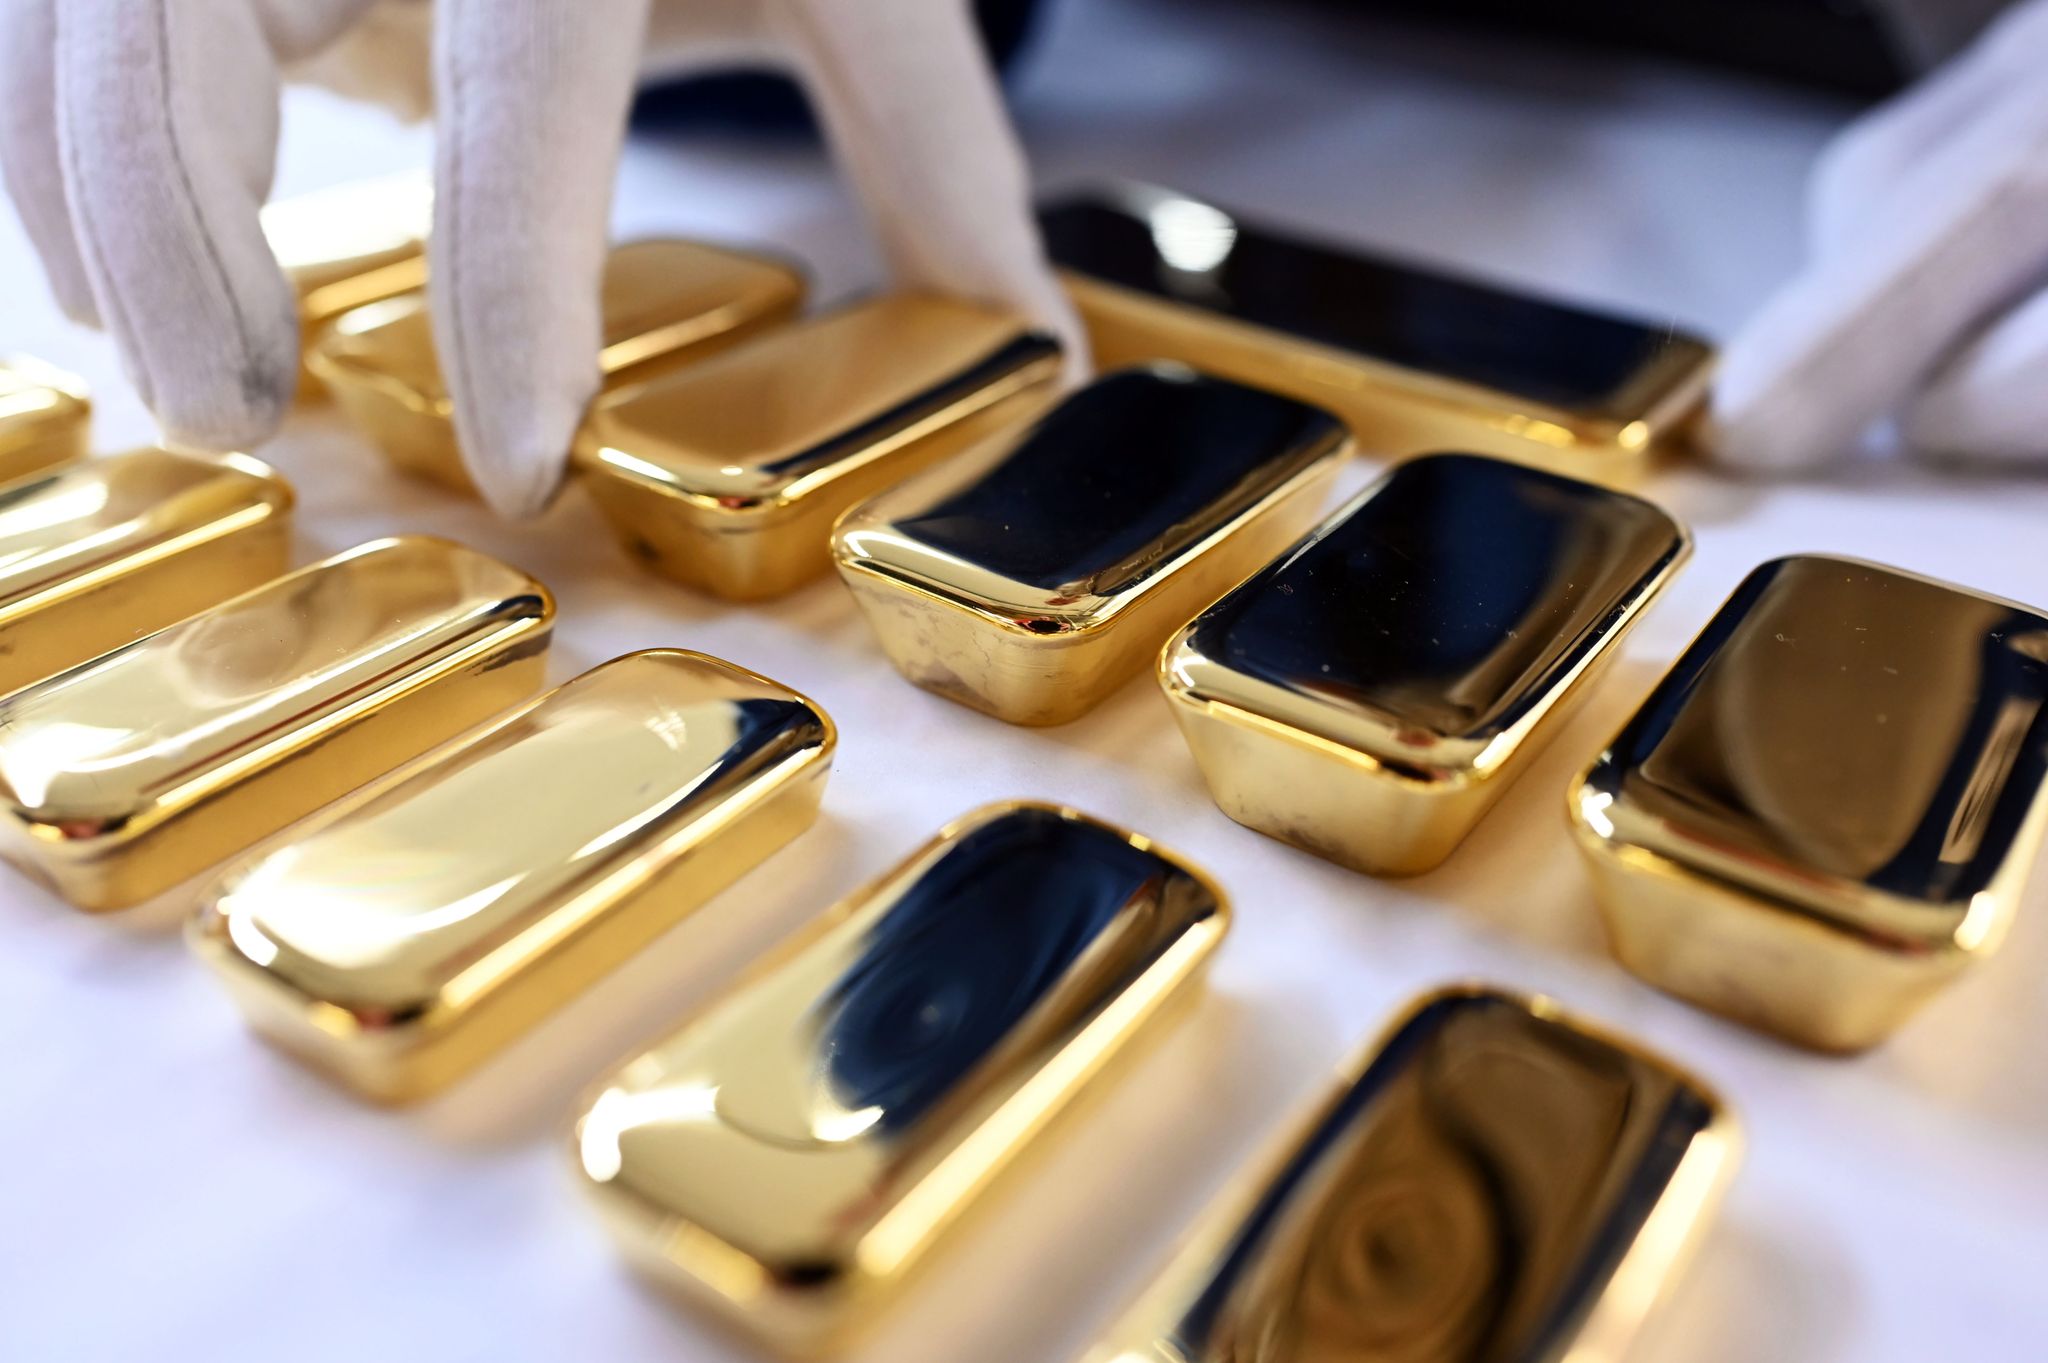 Wer ein Teil seines Vermögens in Gold investieren möchte, sollte Kleinsteinheiten möglichst vermeiden. Denn für diese werden in der Regel üppige Aufpreise fällig.